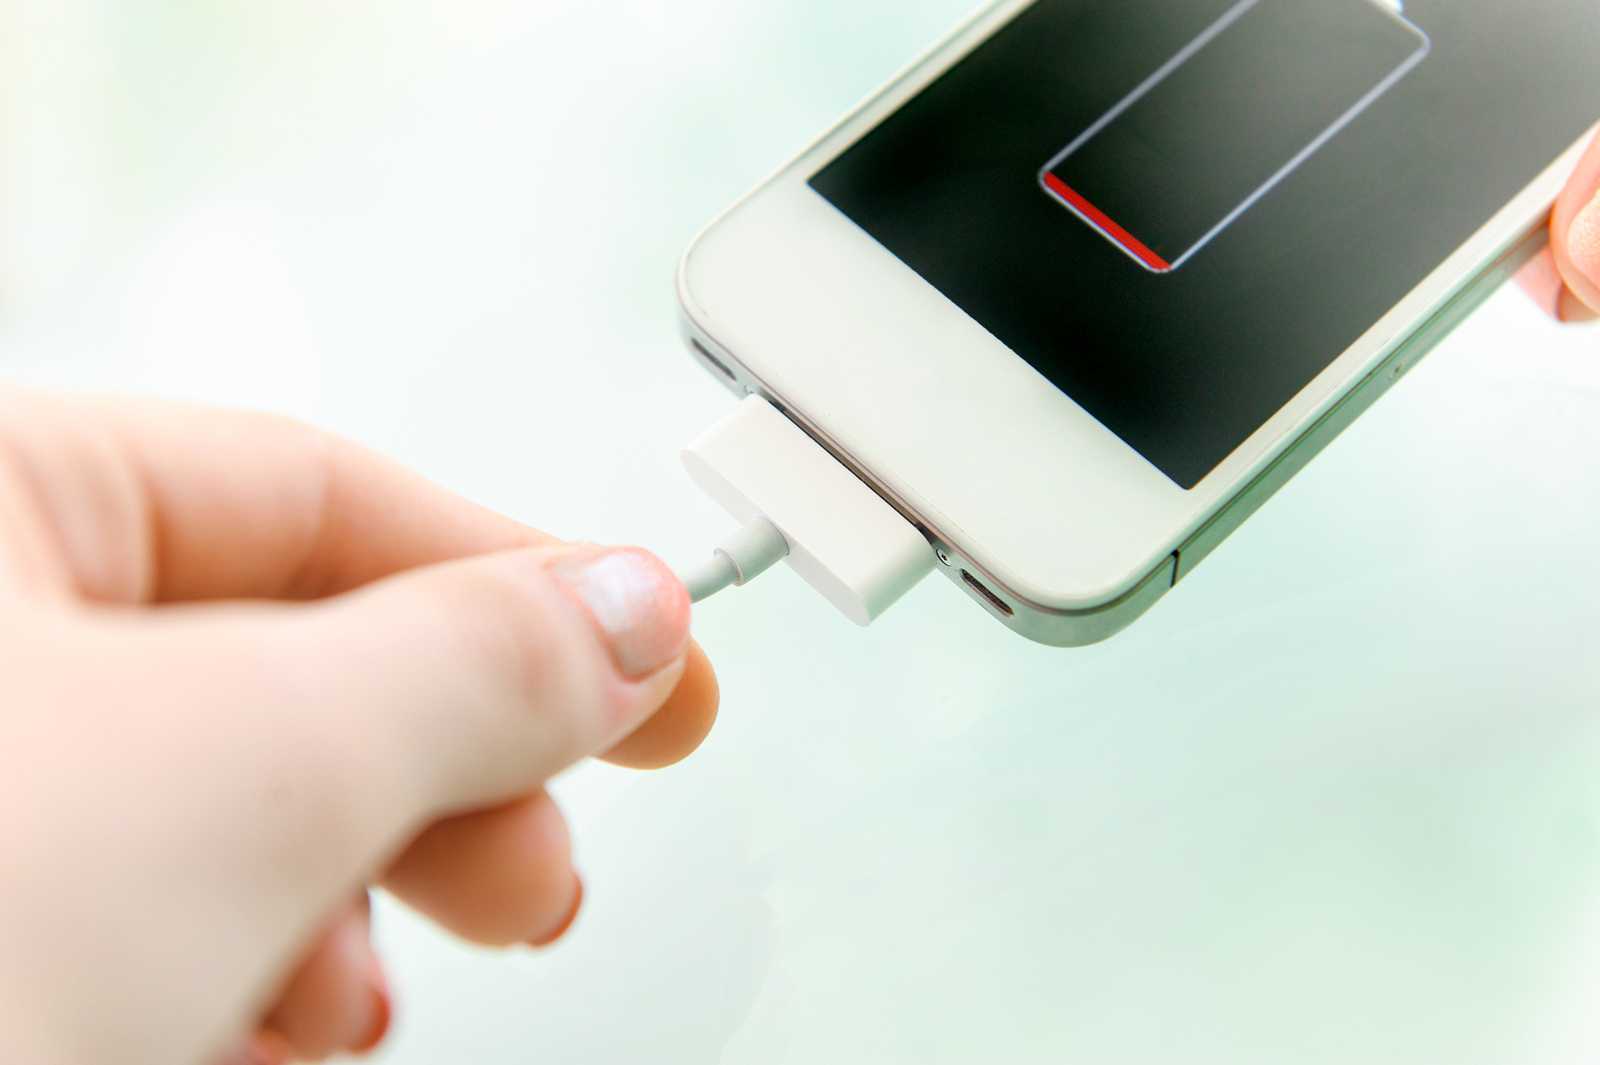 Как быстро зарядить телефон или планшет на базе андроид, а также устранить проблемы с батареей